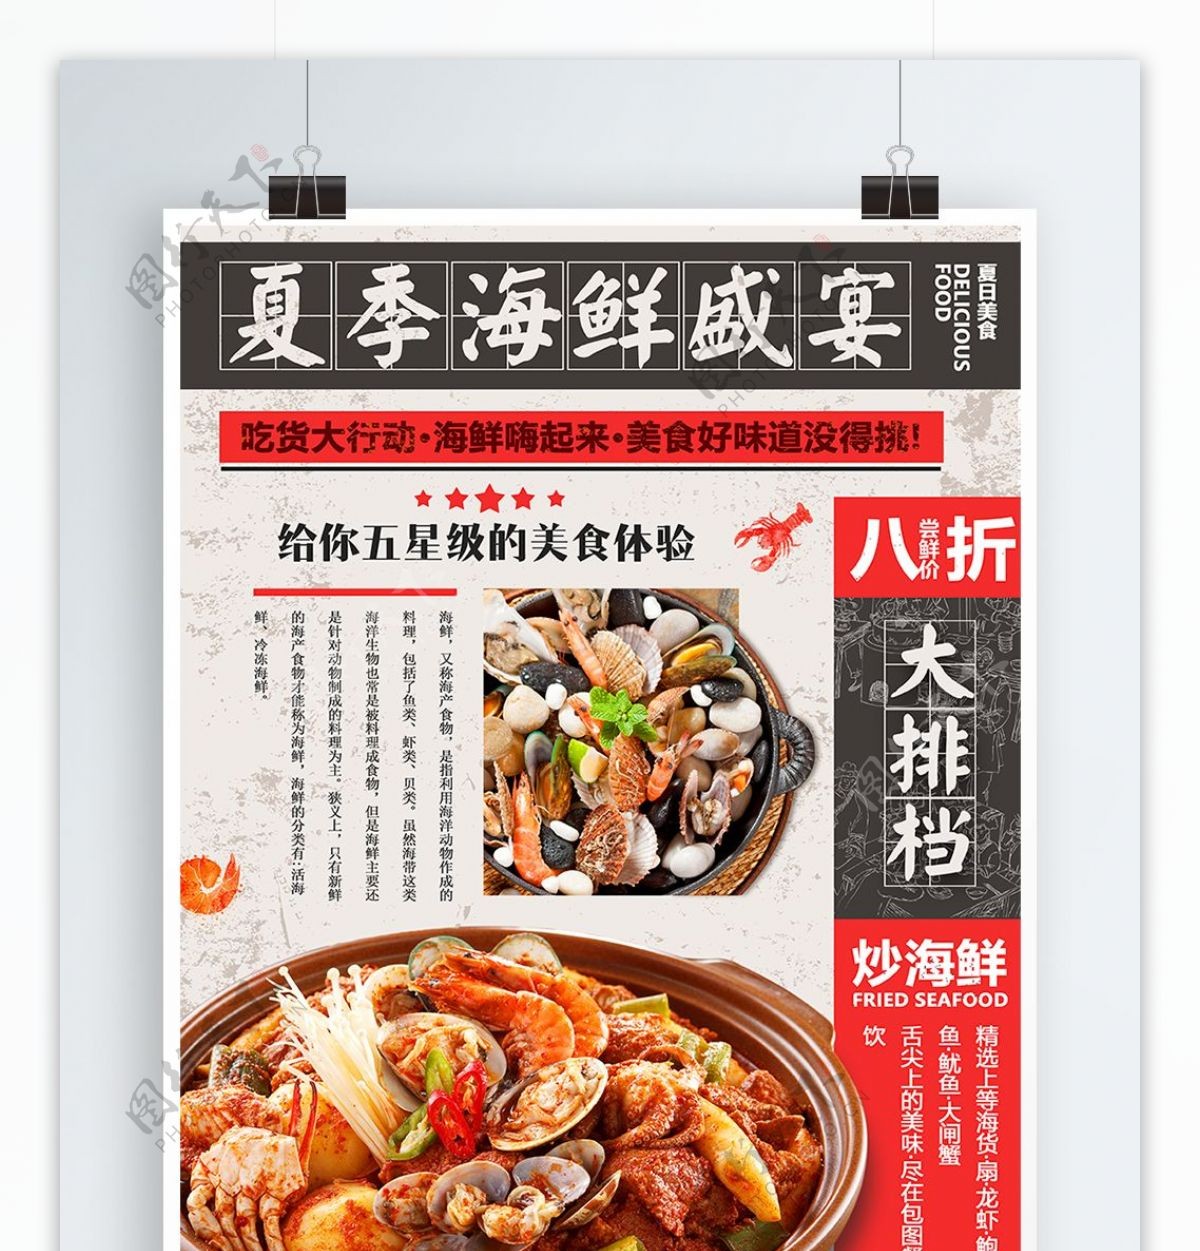 复古中国风夏季美食海鲜盛宴大排档折扣宣传海报